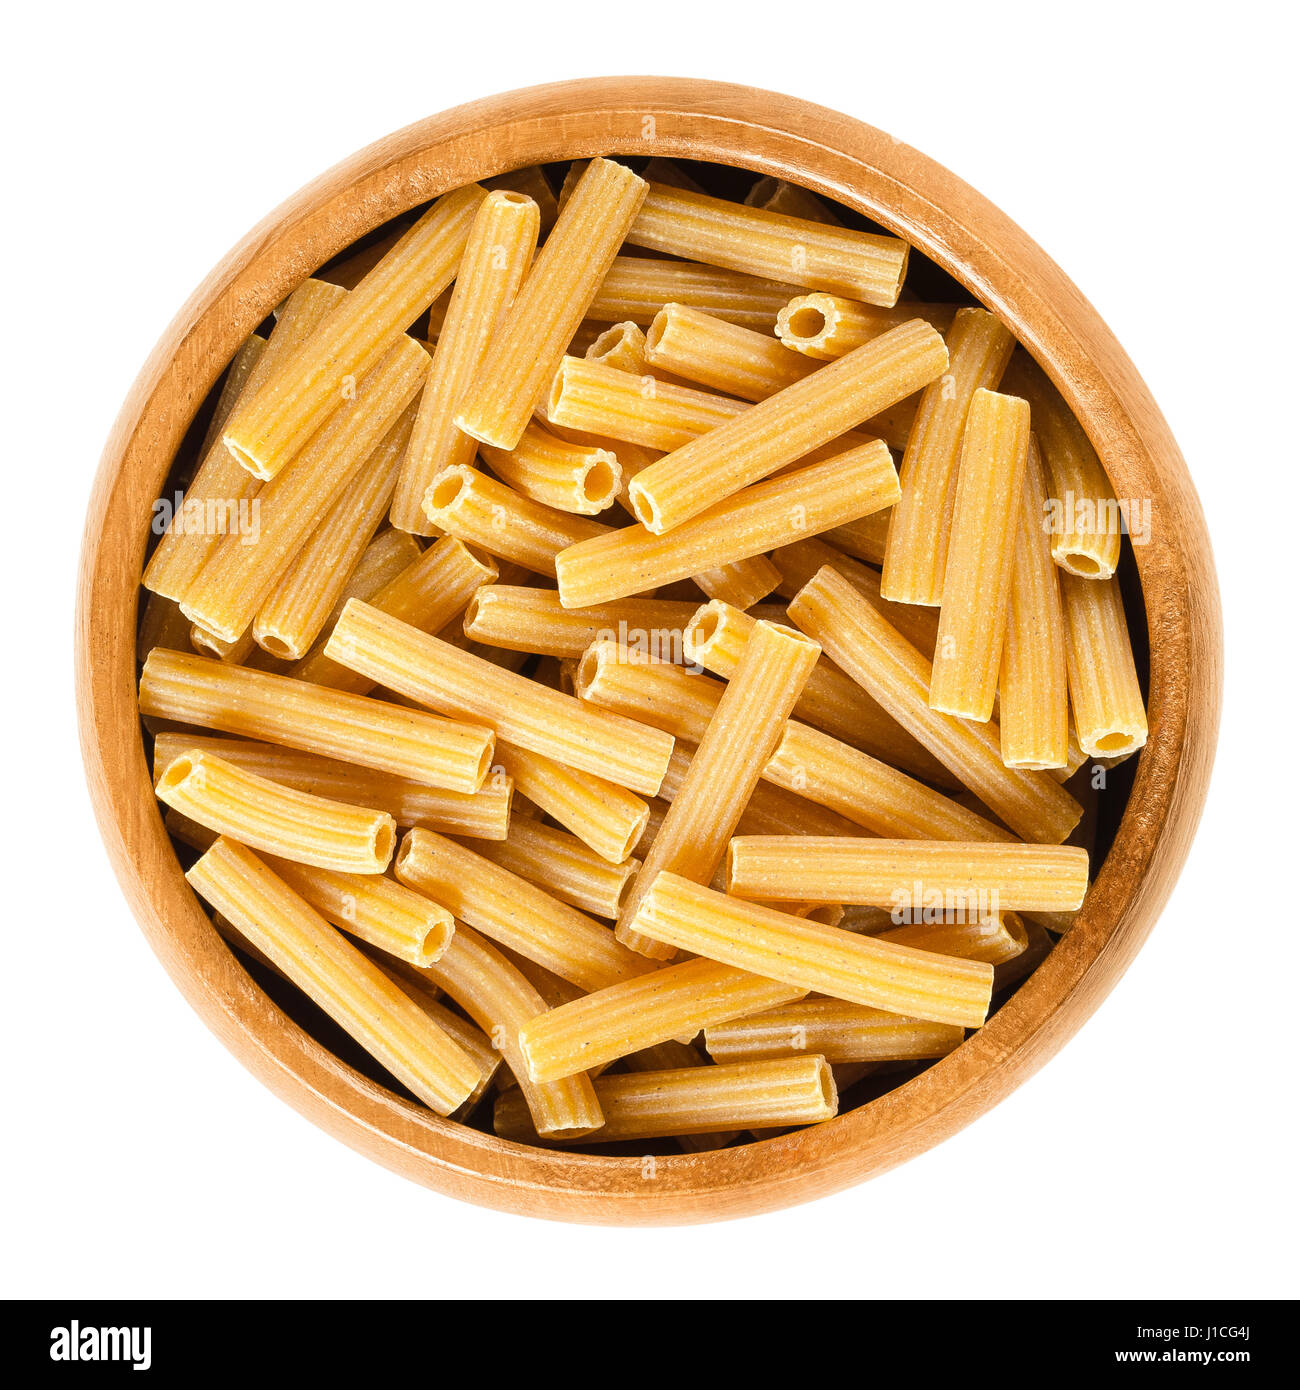 Pois chiches sedanini rigati pasta dans bol en bois. Nouilles séchées sans gluten non cuite fabriqué à partir de farine Cicer arietinum. Tubes longueur courte avec des crêtes. Banque D'Images